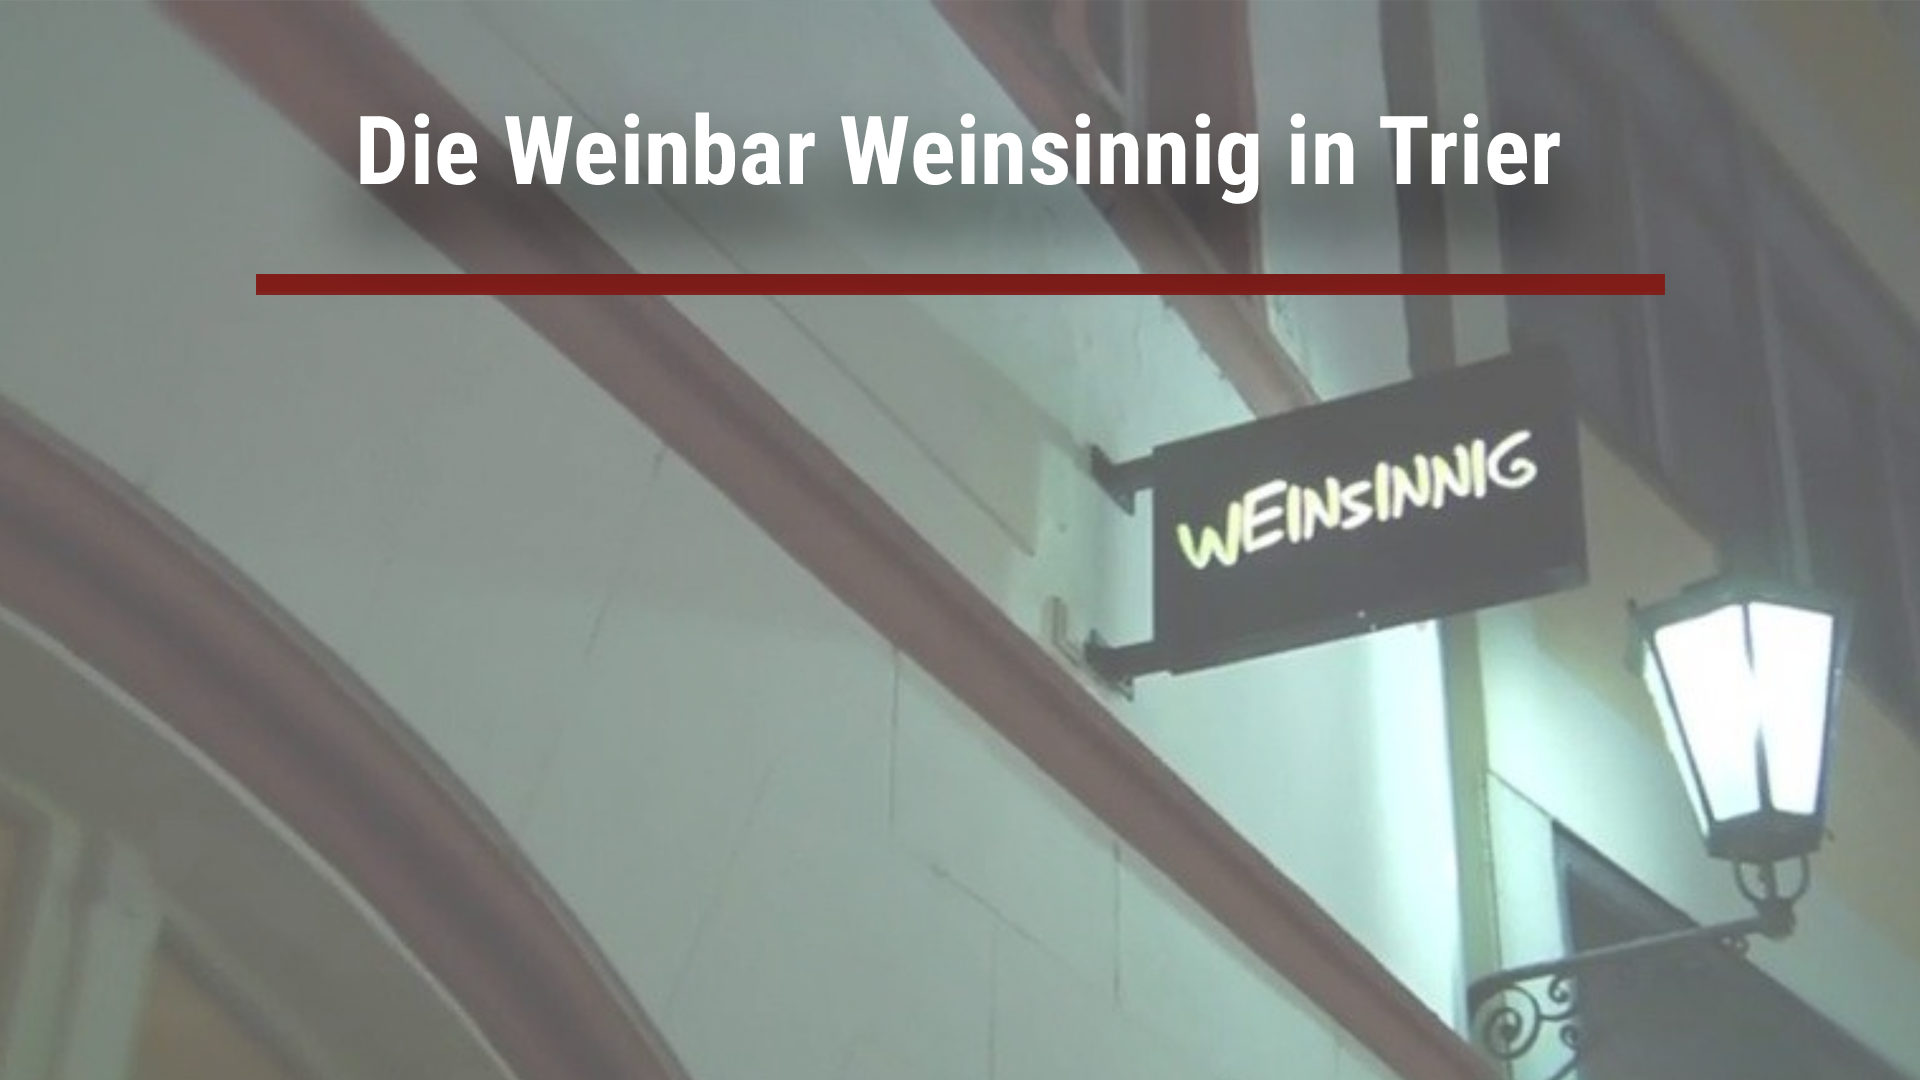 Read more about the article Die Weinbar Weinsinnig in Trier